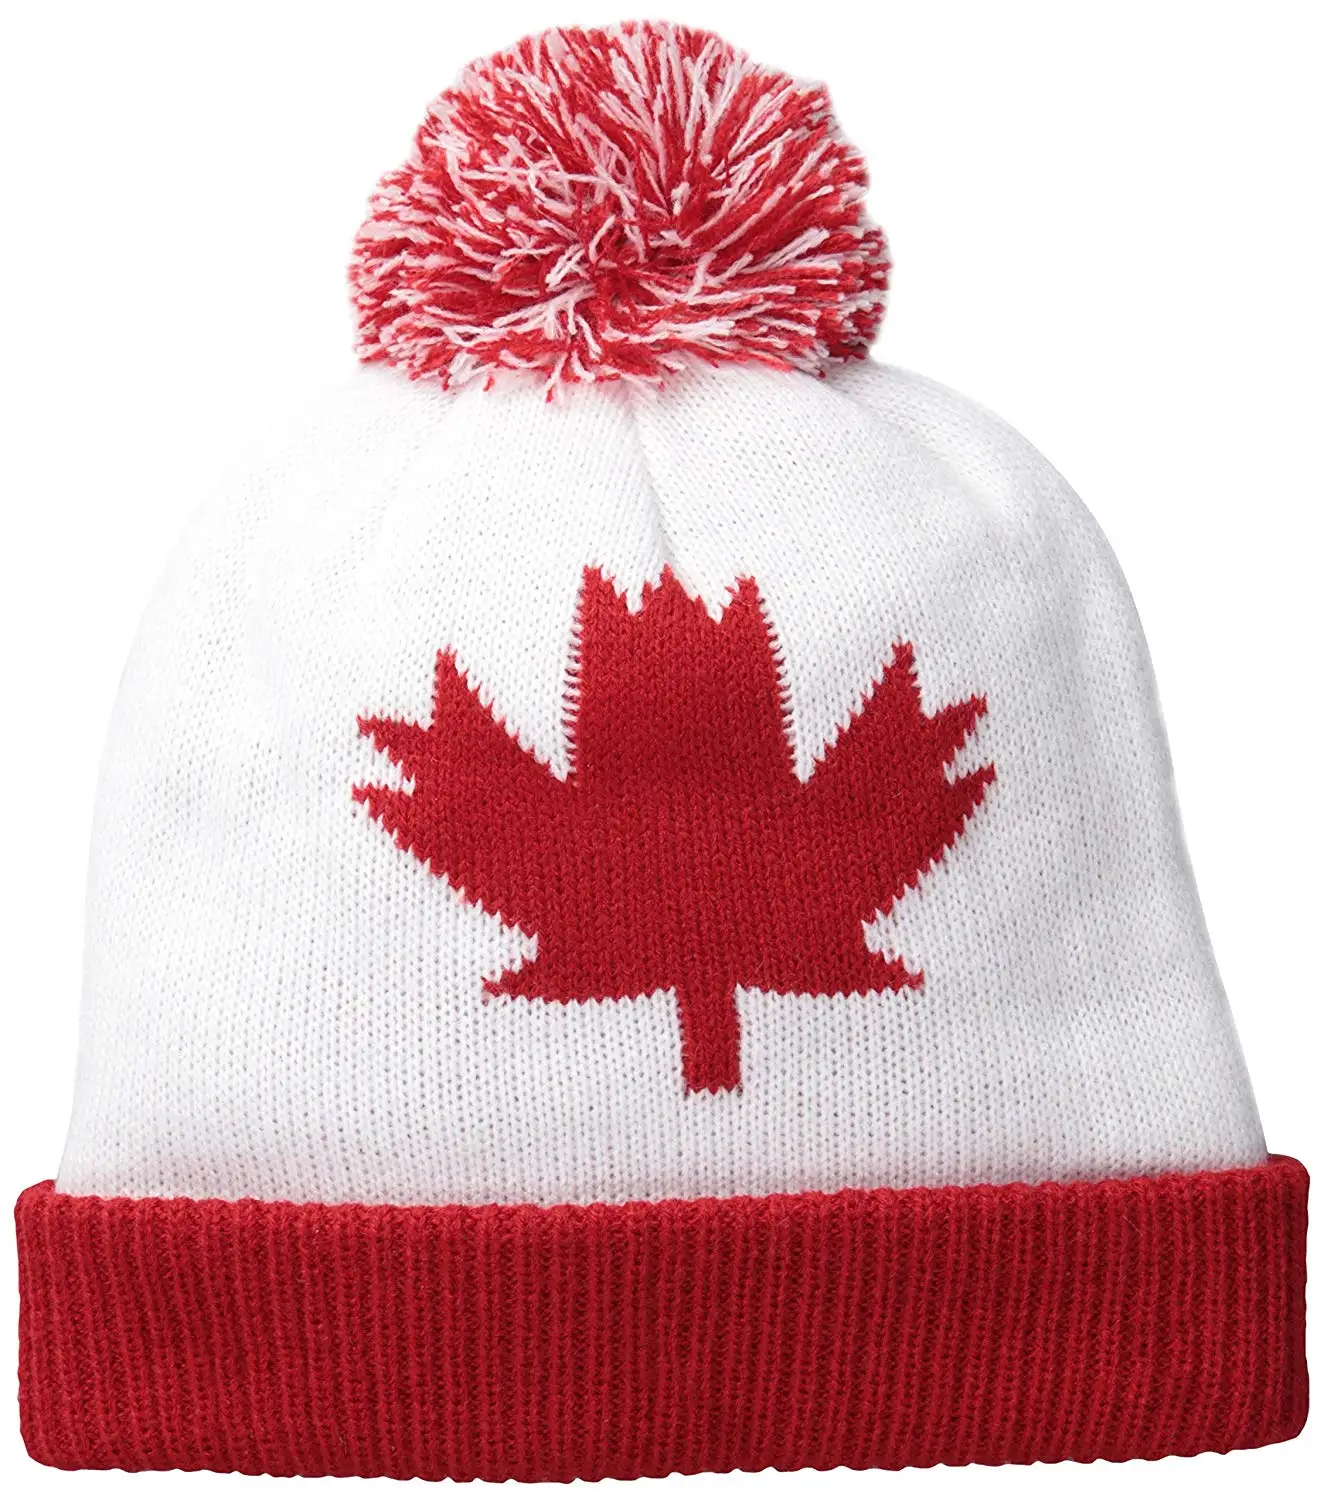 Toque канадская шапка